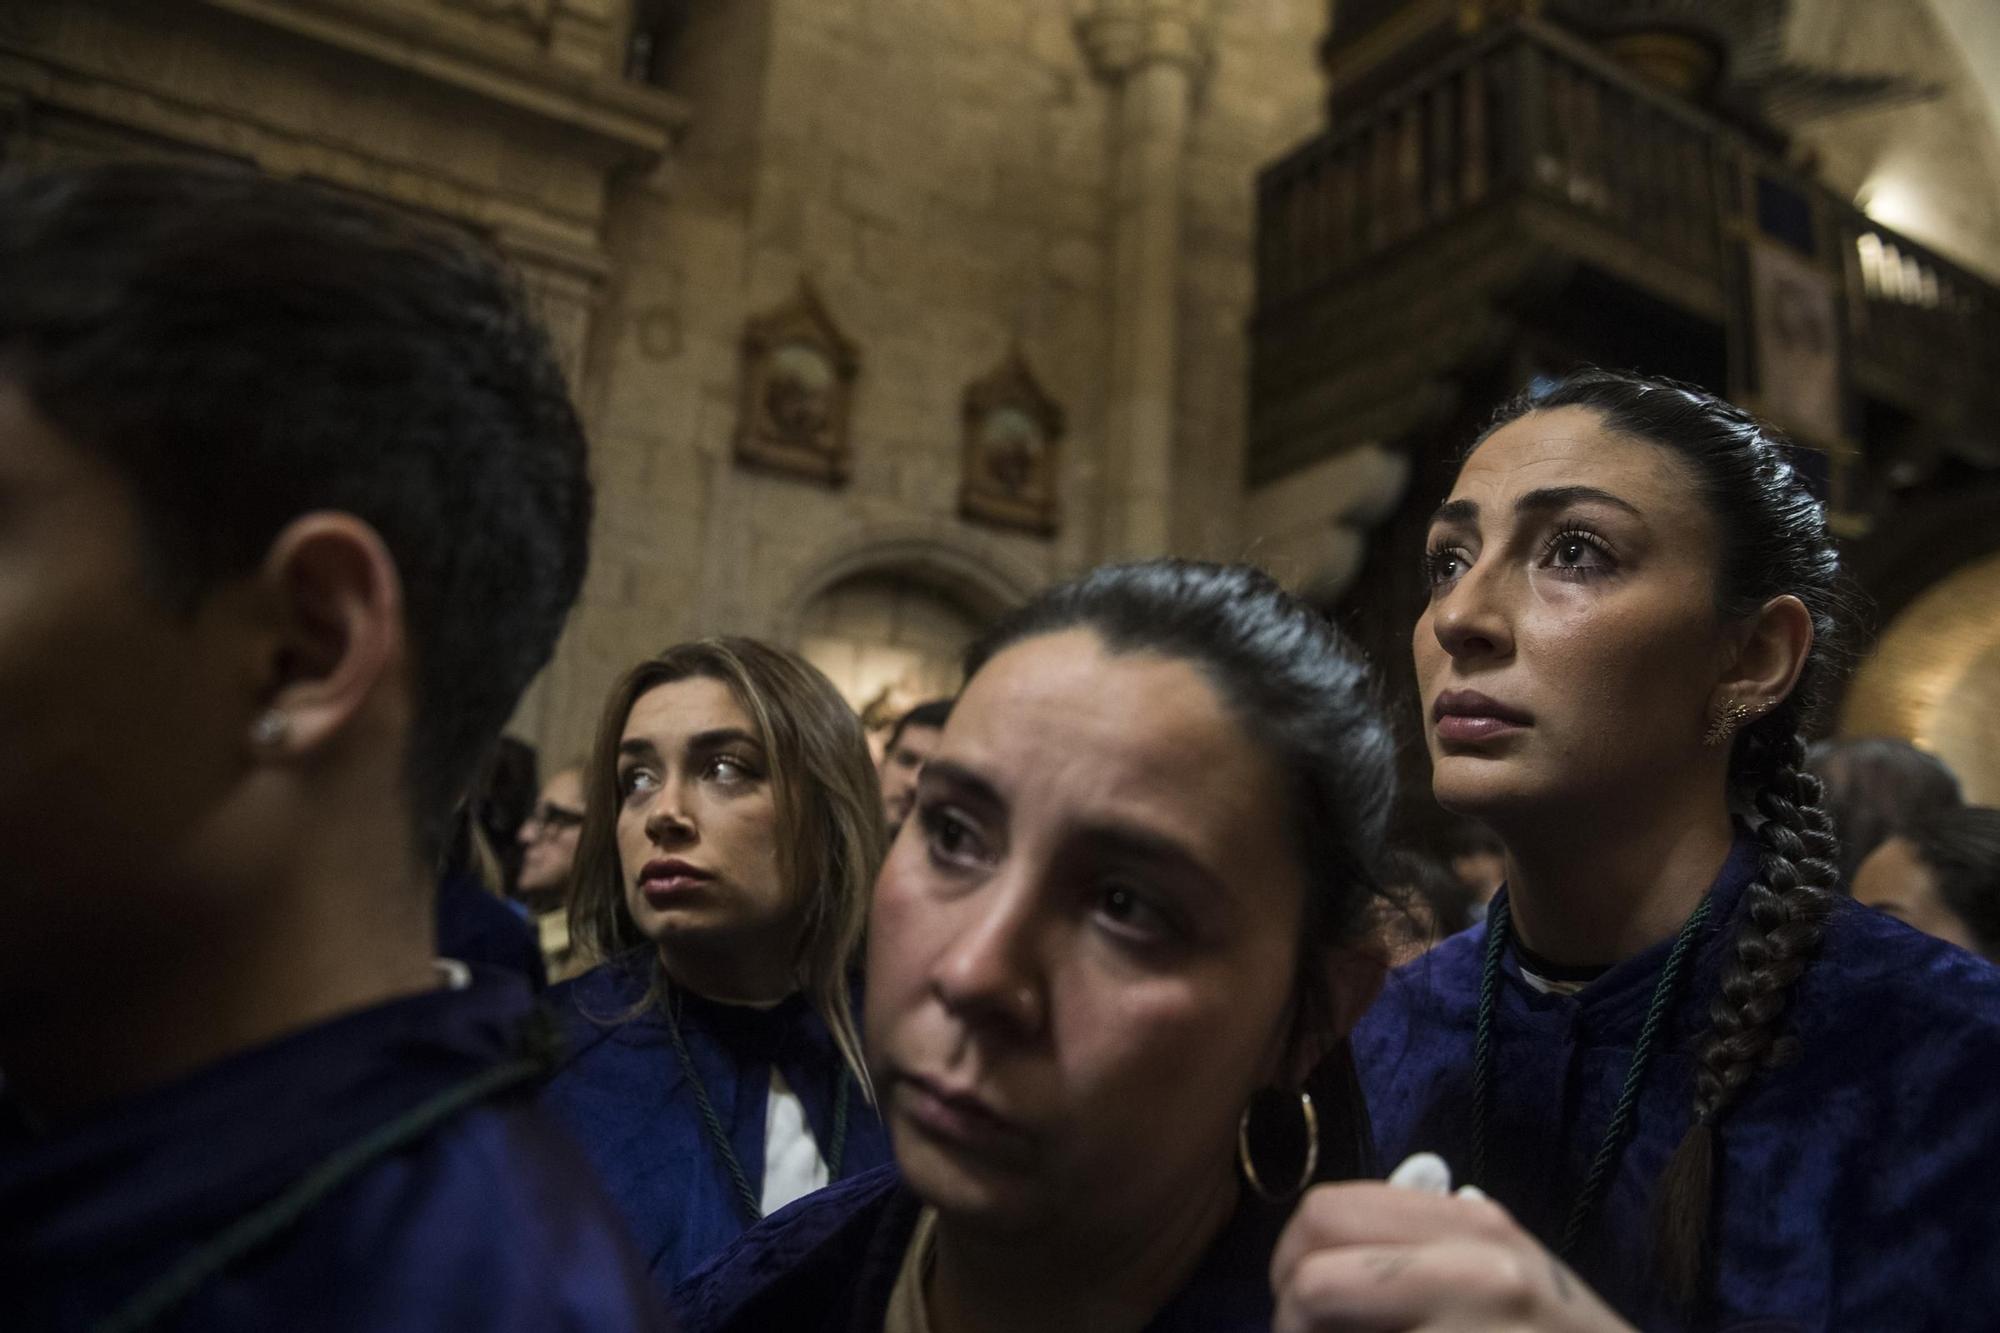 Desconsuelo en la suspensión de la procesión de la Esperanza en Cáceres